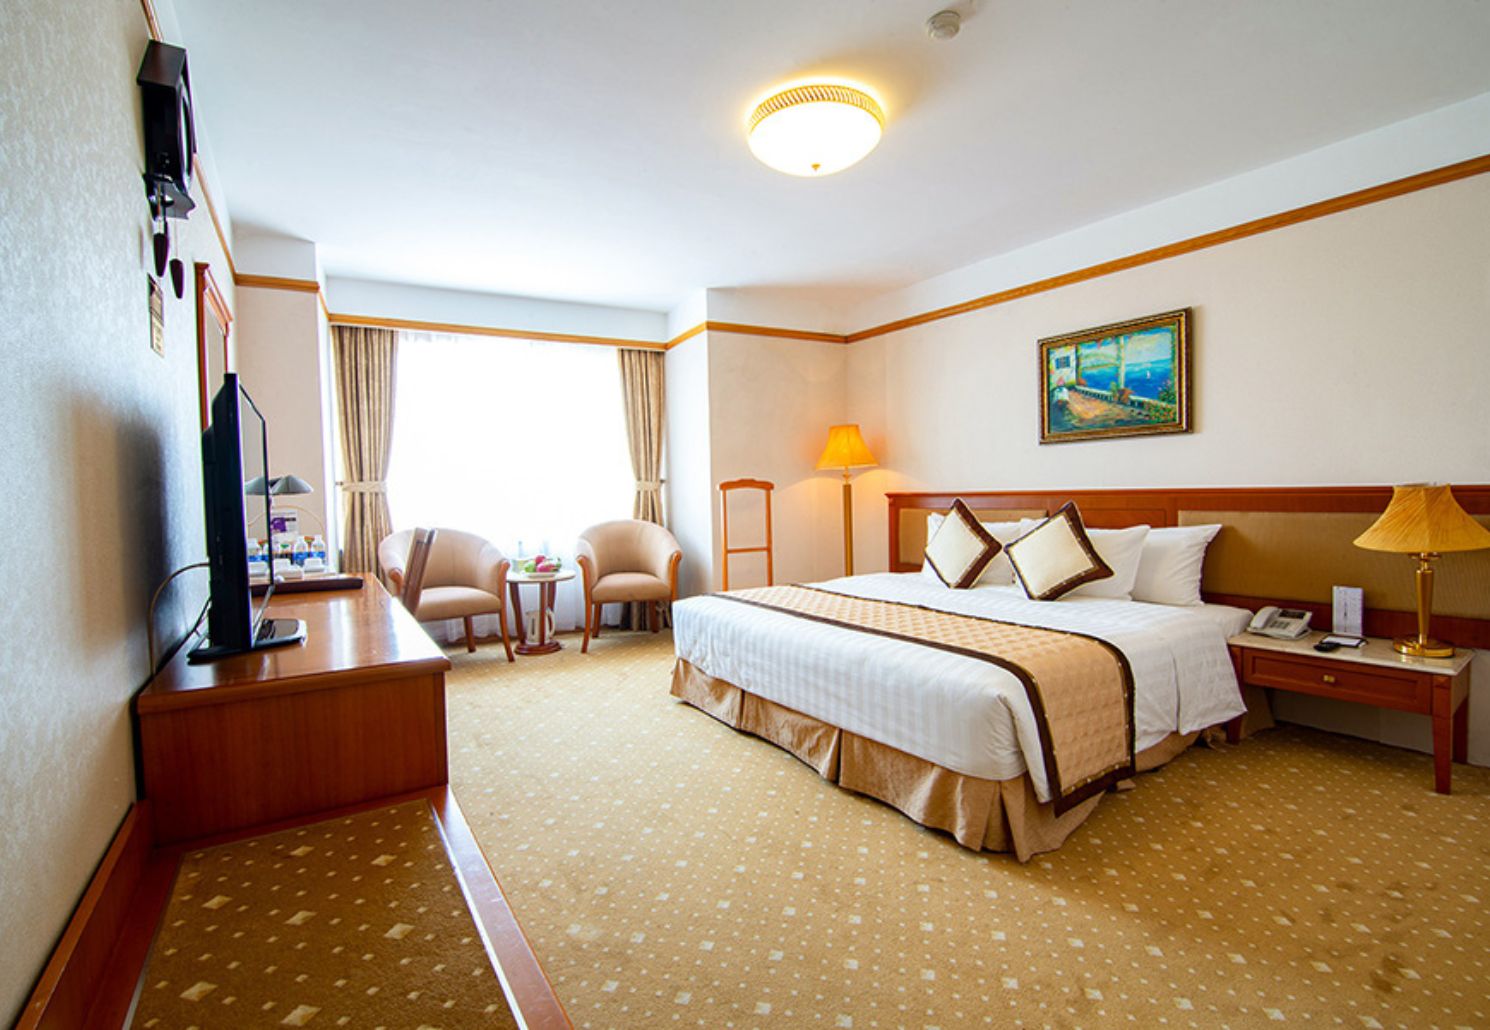 A25 Hotel and Spa, lựa chọn hoàn hảo cho kì nghỉ tại Thủ đô 6